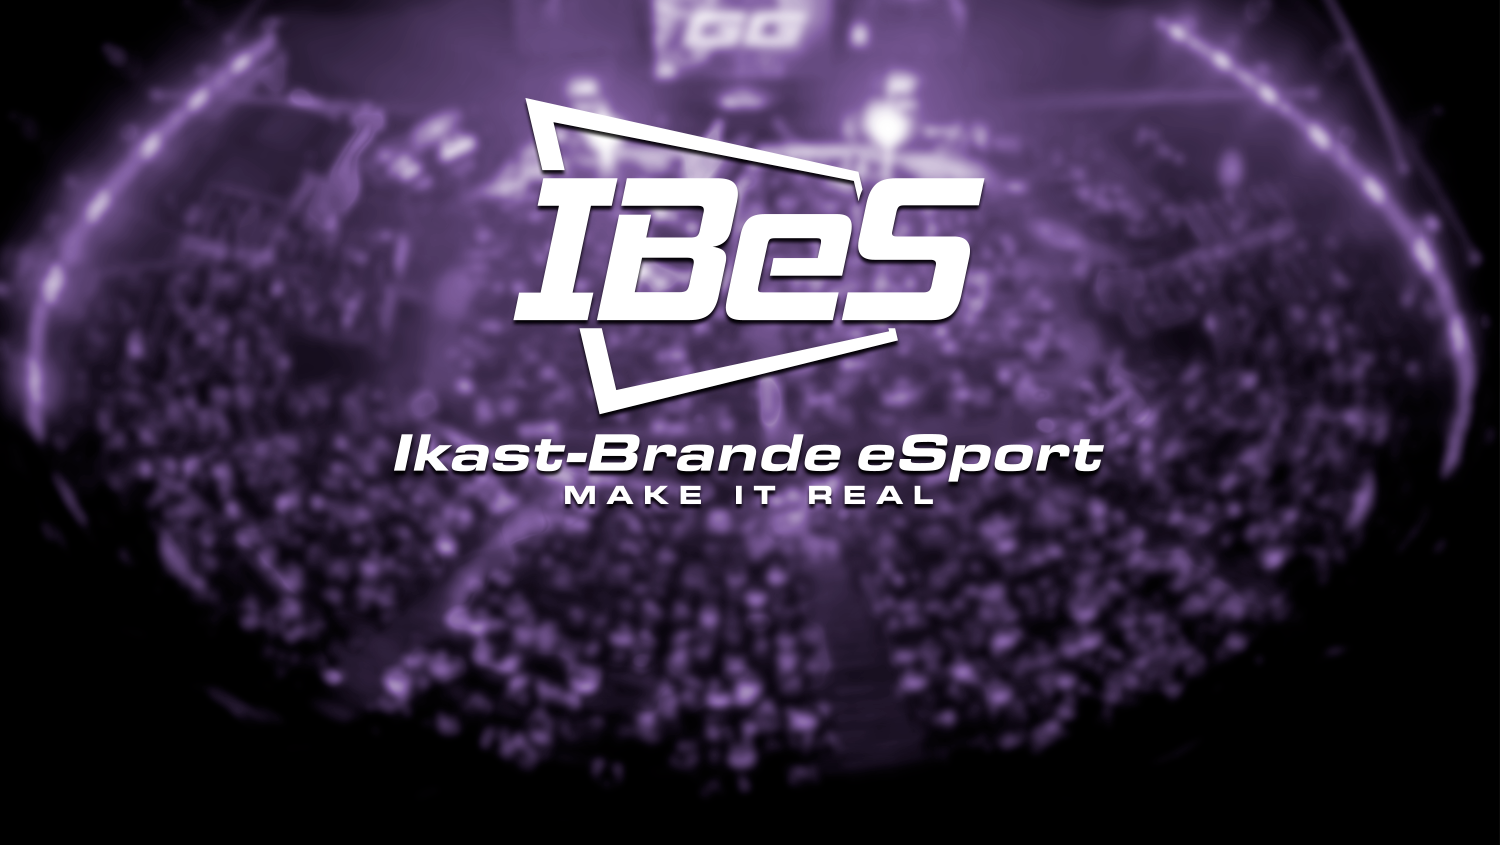 sprogfærdighed Modsatte scramble Ikast-Brande eSport – IBeS – En af DKs førende esportsforeninger